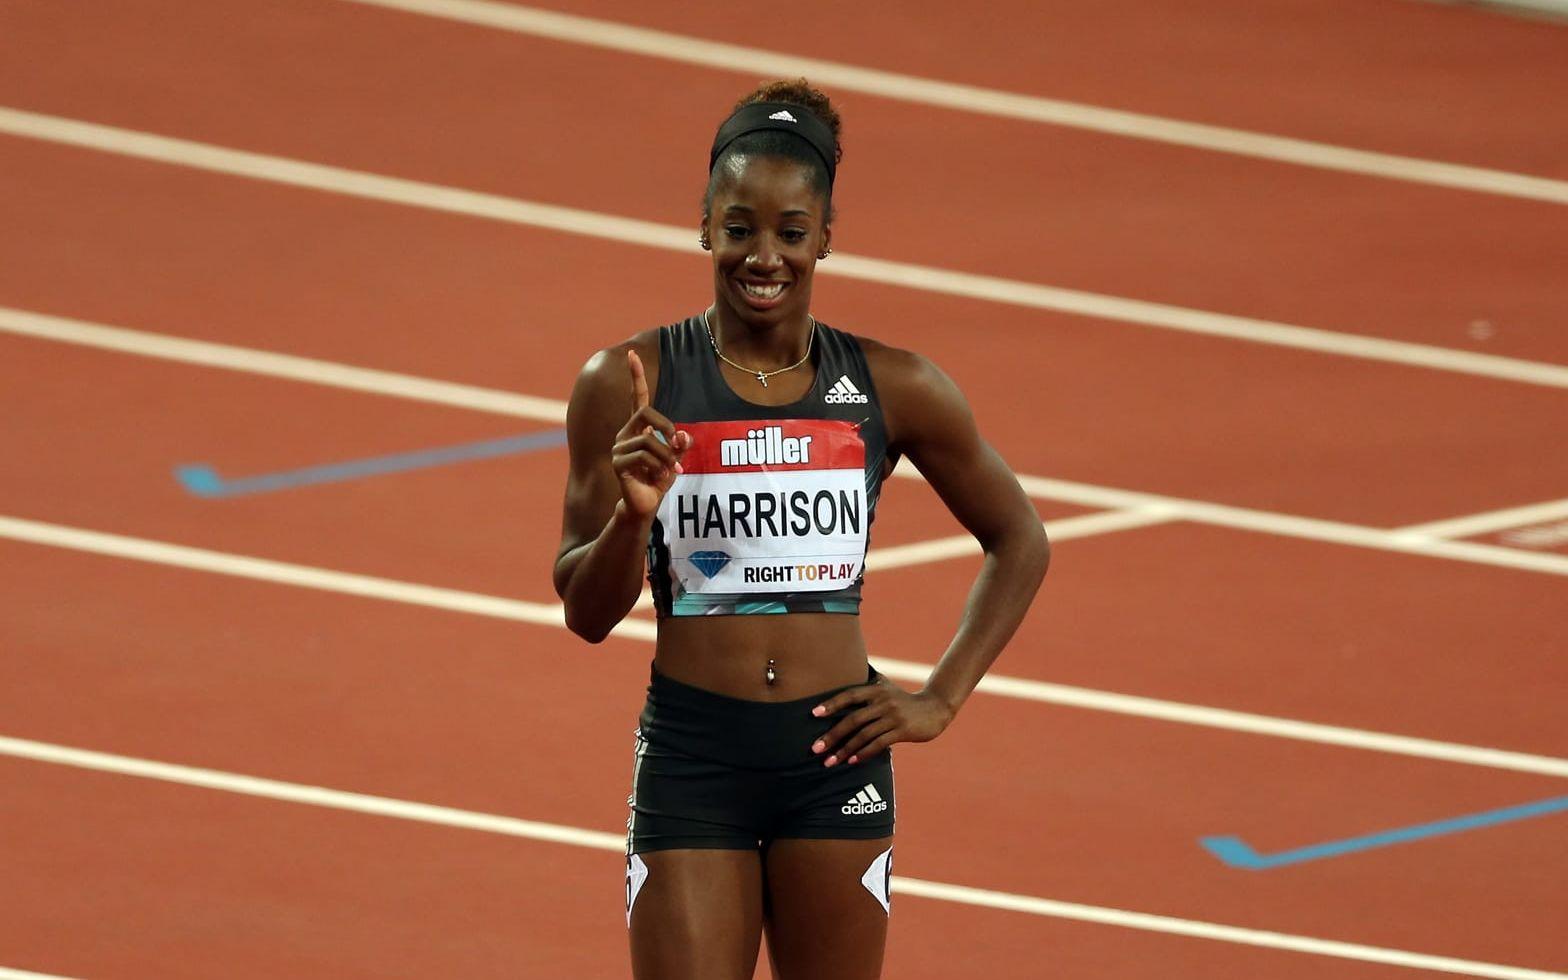 Kendra Harrison, 100 meter häck. Harrison slog det 28 år gamla världsrekordet just i London förra året. Nu siktar hon på guldet på den korta häckdistansen på samma plats. Bild: Bildbyrån.